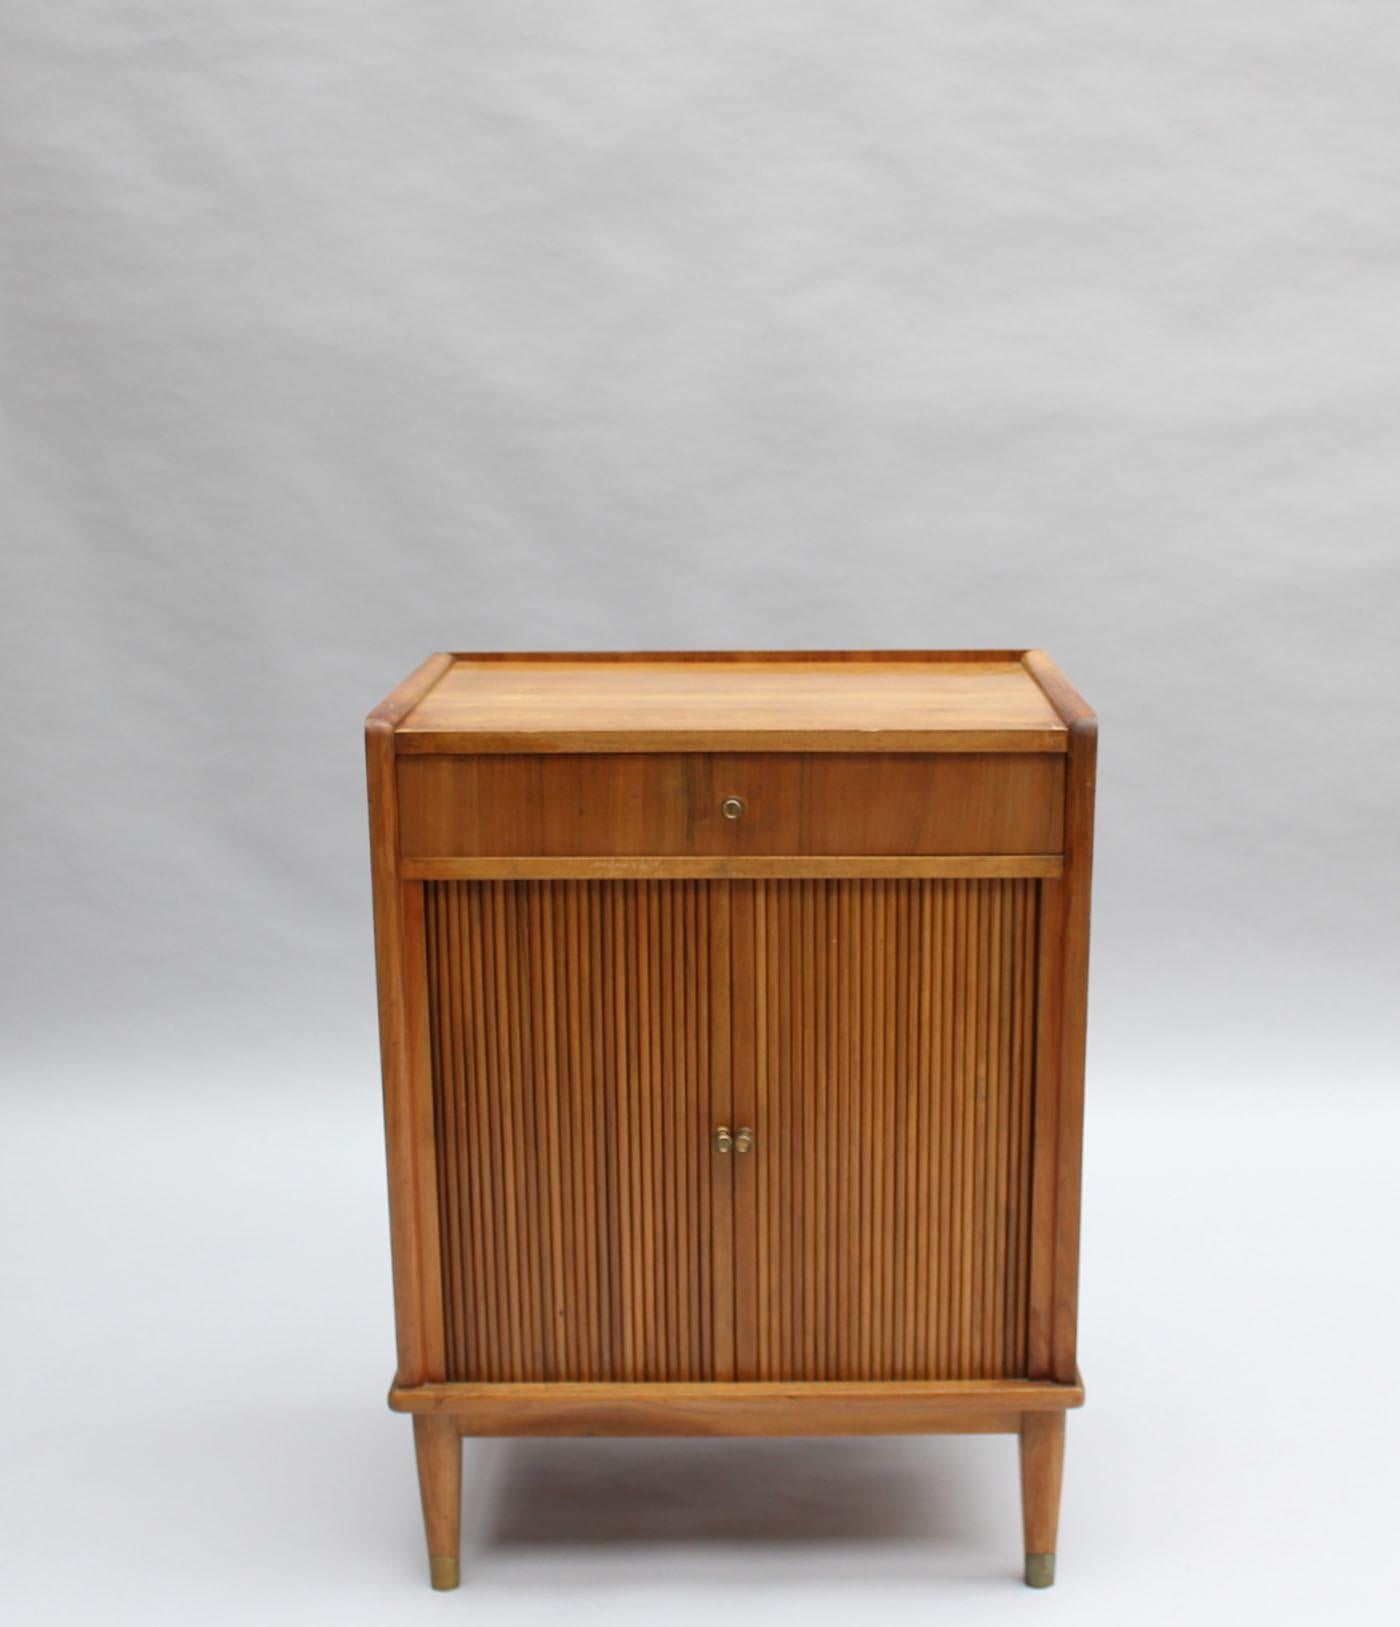 Petit meuble à musique français des années 1930 en noyer avec 2 portes à tambour, 1 tiroir et des détails en bronze.
Peut également être utilisé comme table de nuit ou table d'appoint.